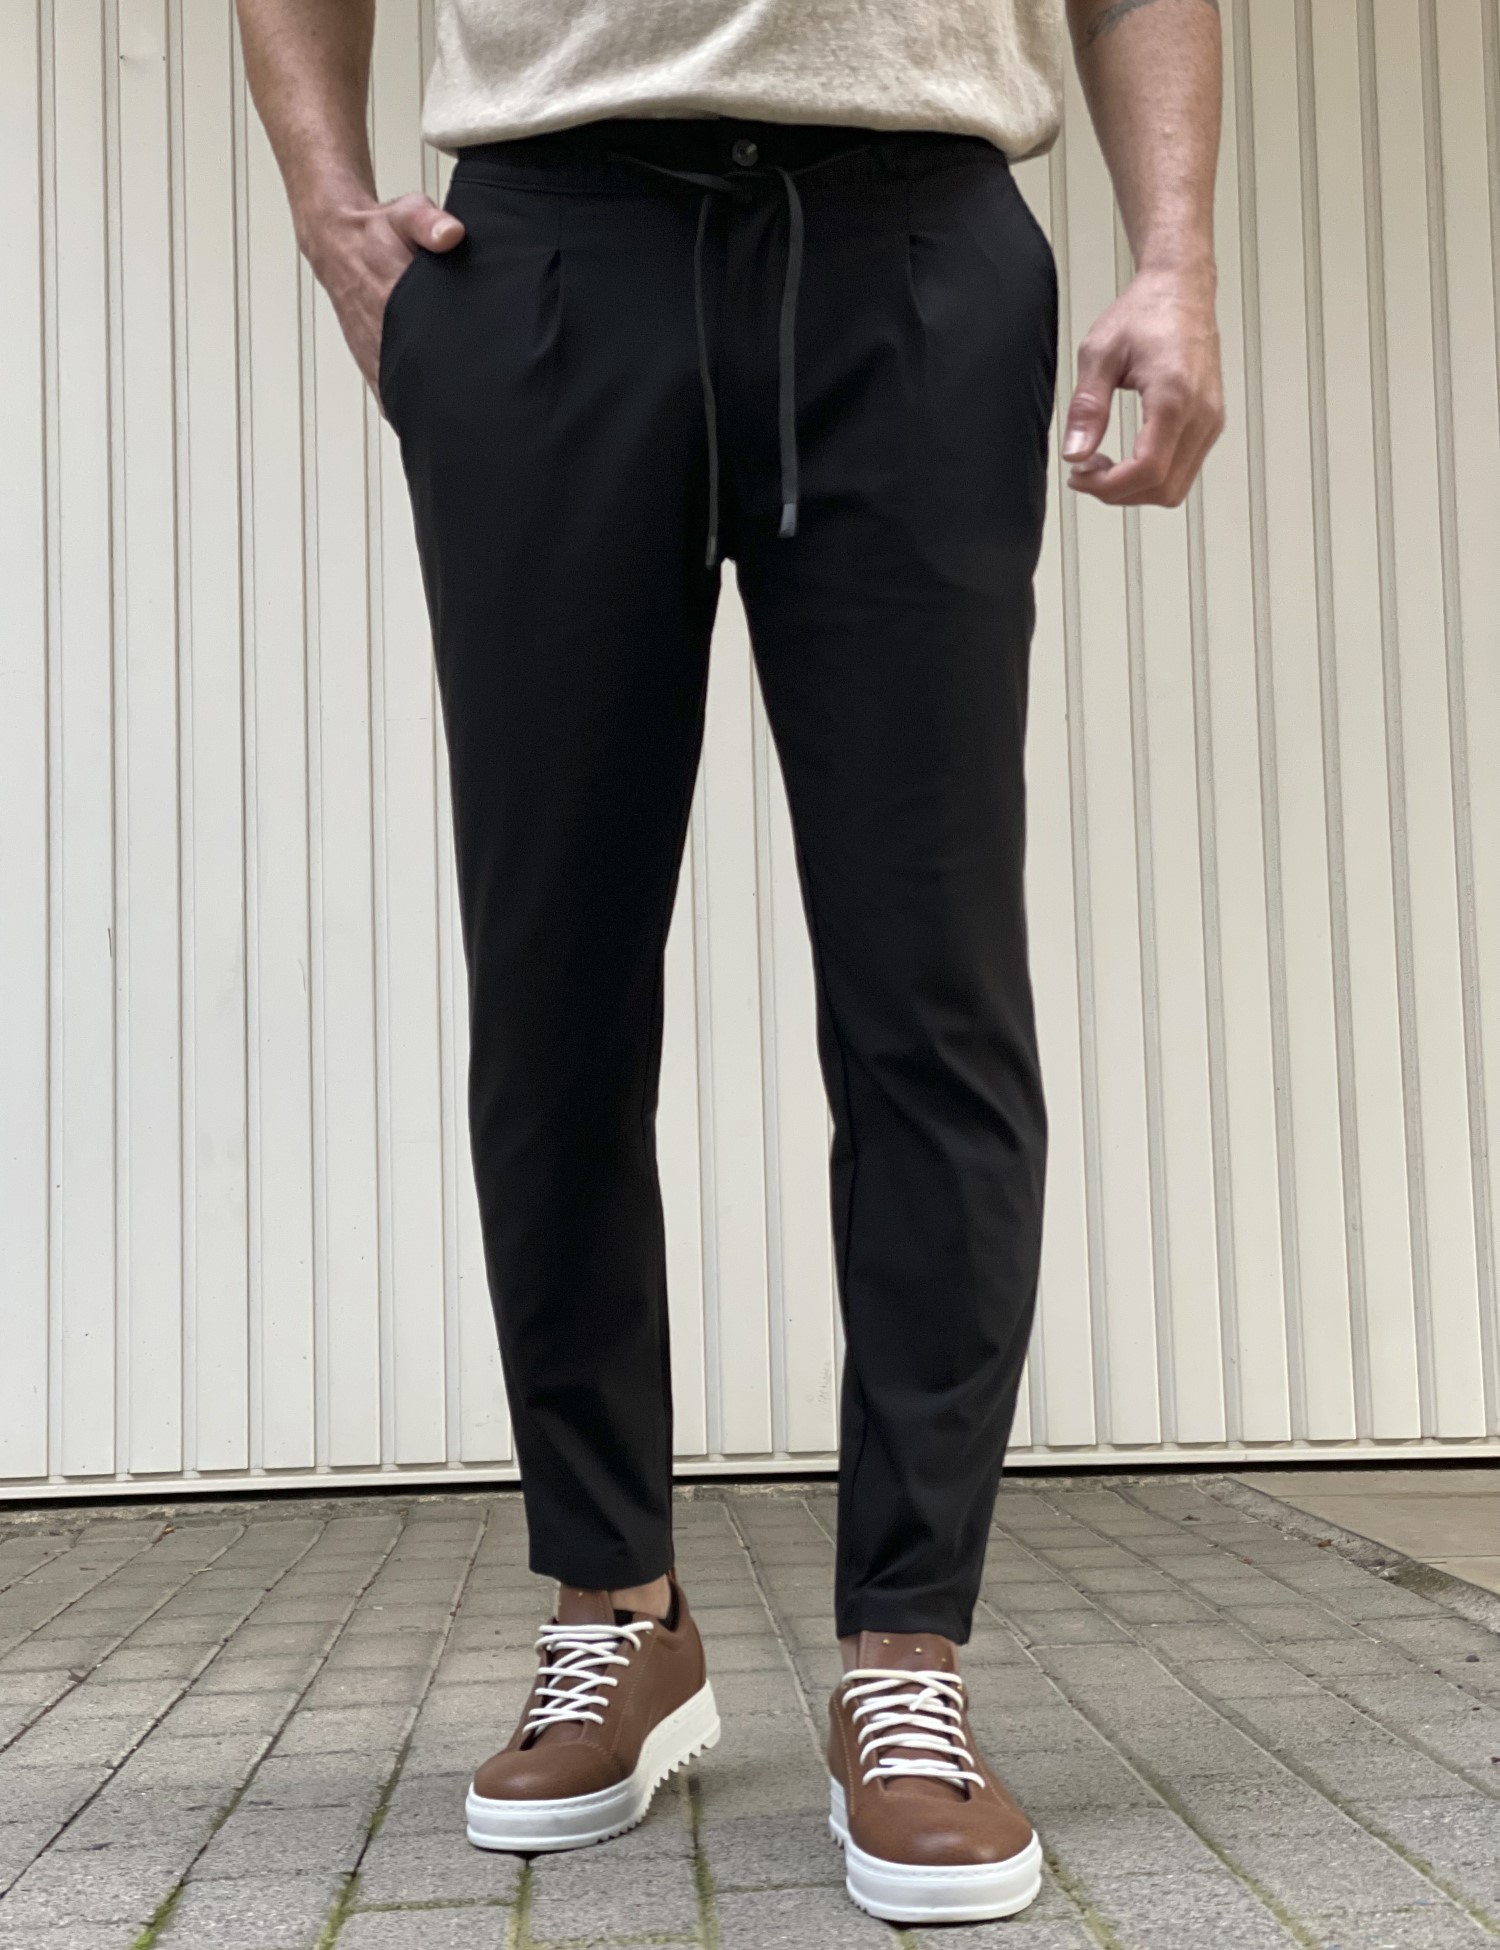 – Ανδρικο μαυρο υφασματινο παντελονι με πιετα PNT5013